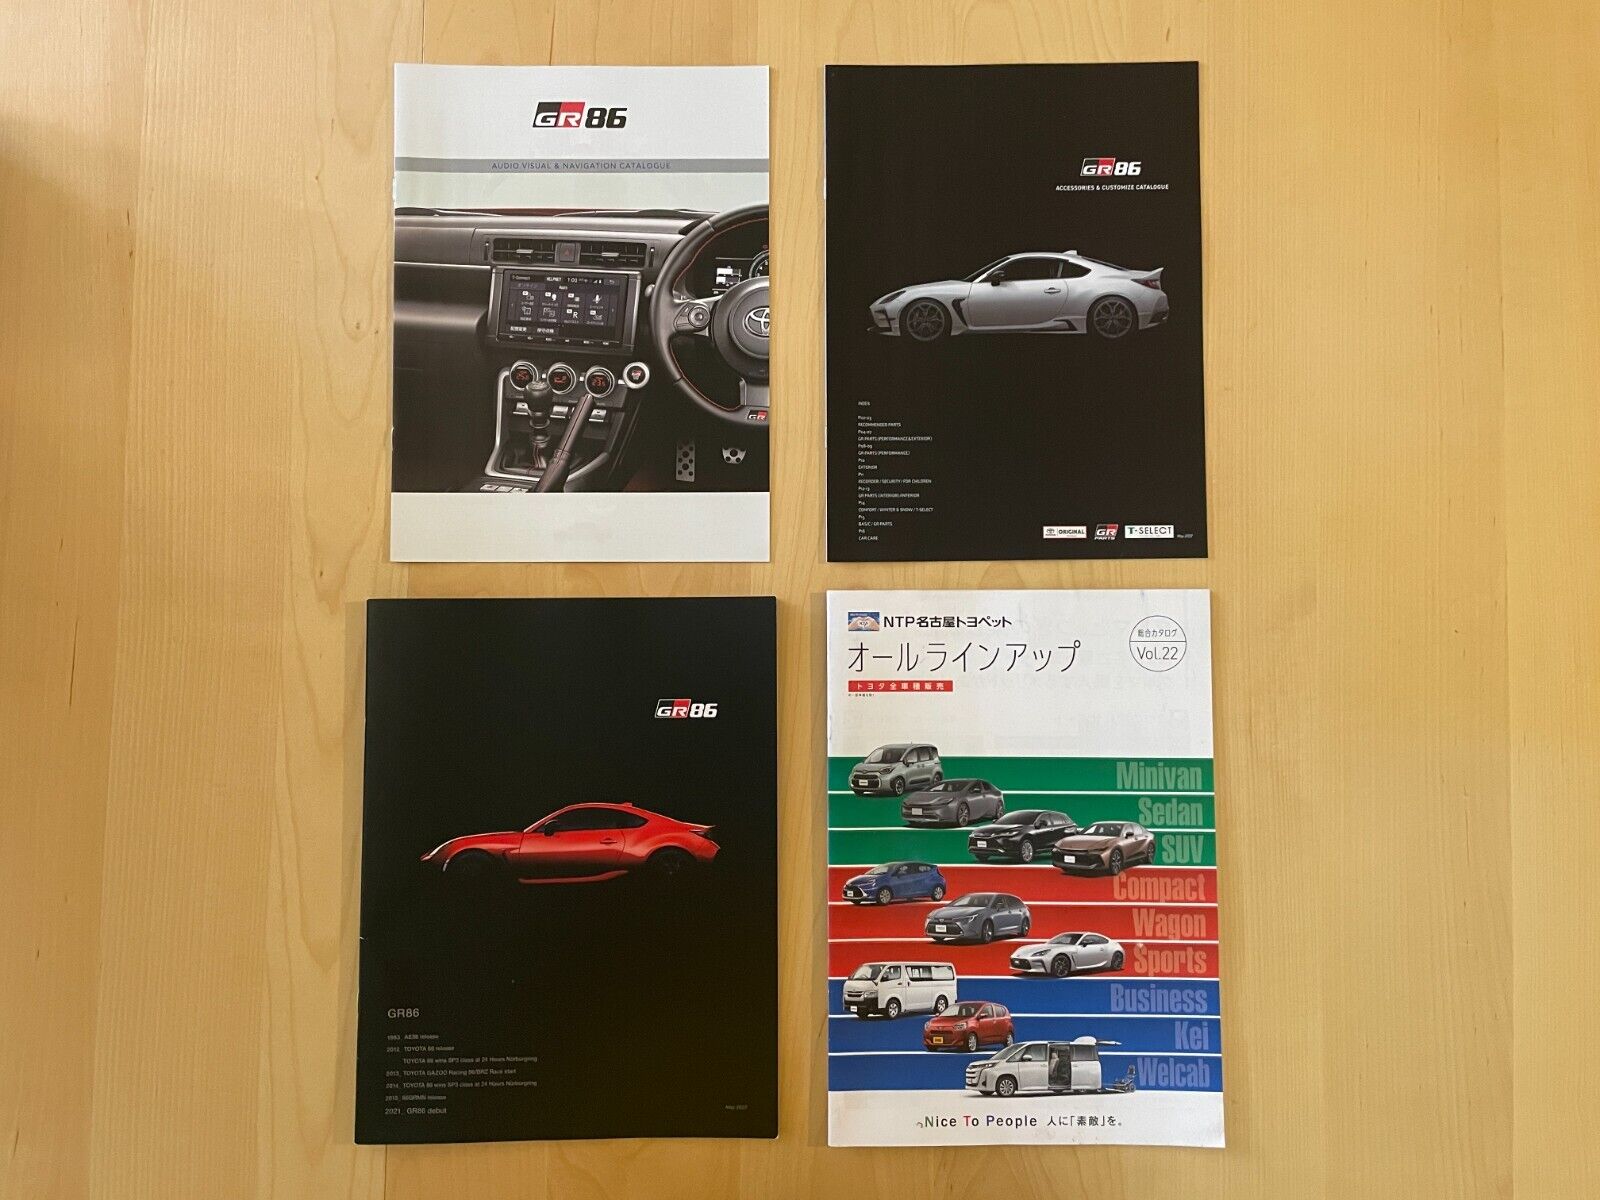 Toyota GR86 Catalog Brochure - USA SELLER